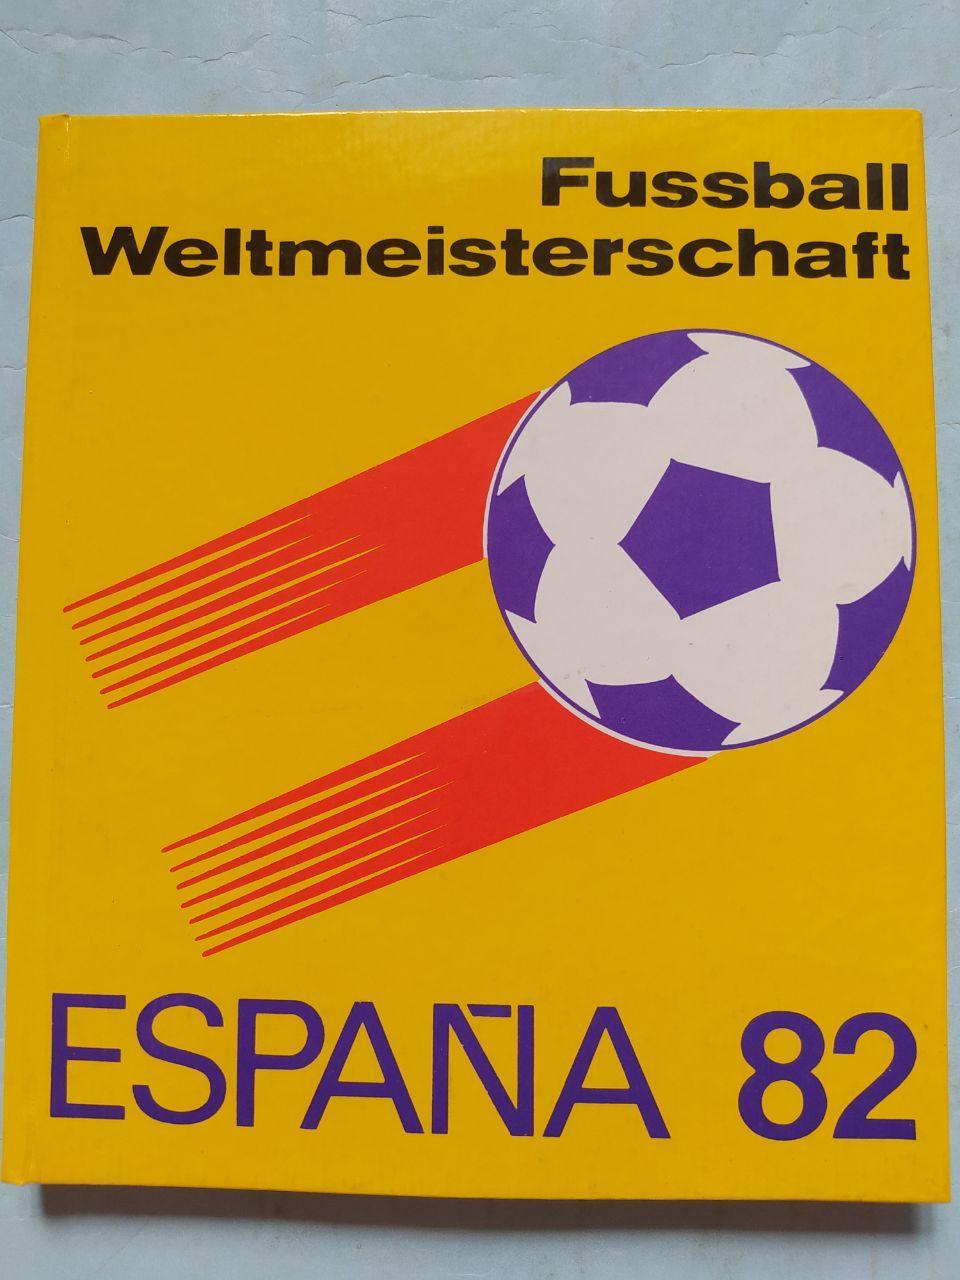 Fussball Weltmeisterschaft ESPANA 1982 Чемпионат мира по футболу Испания 1982